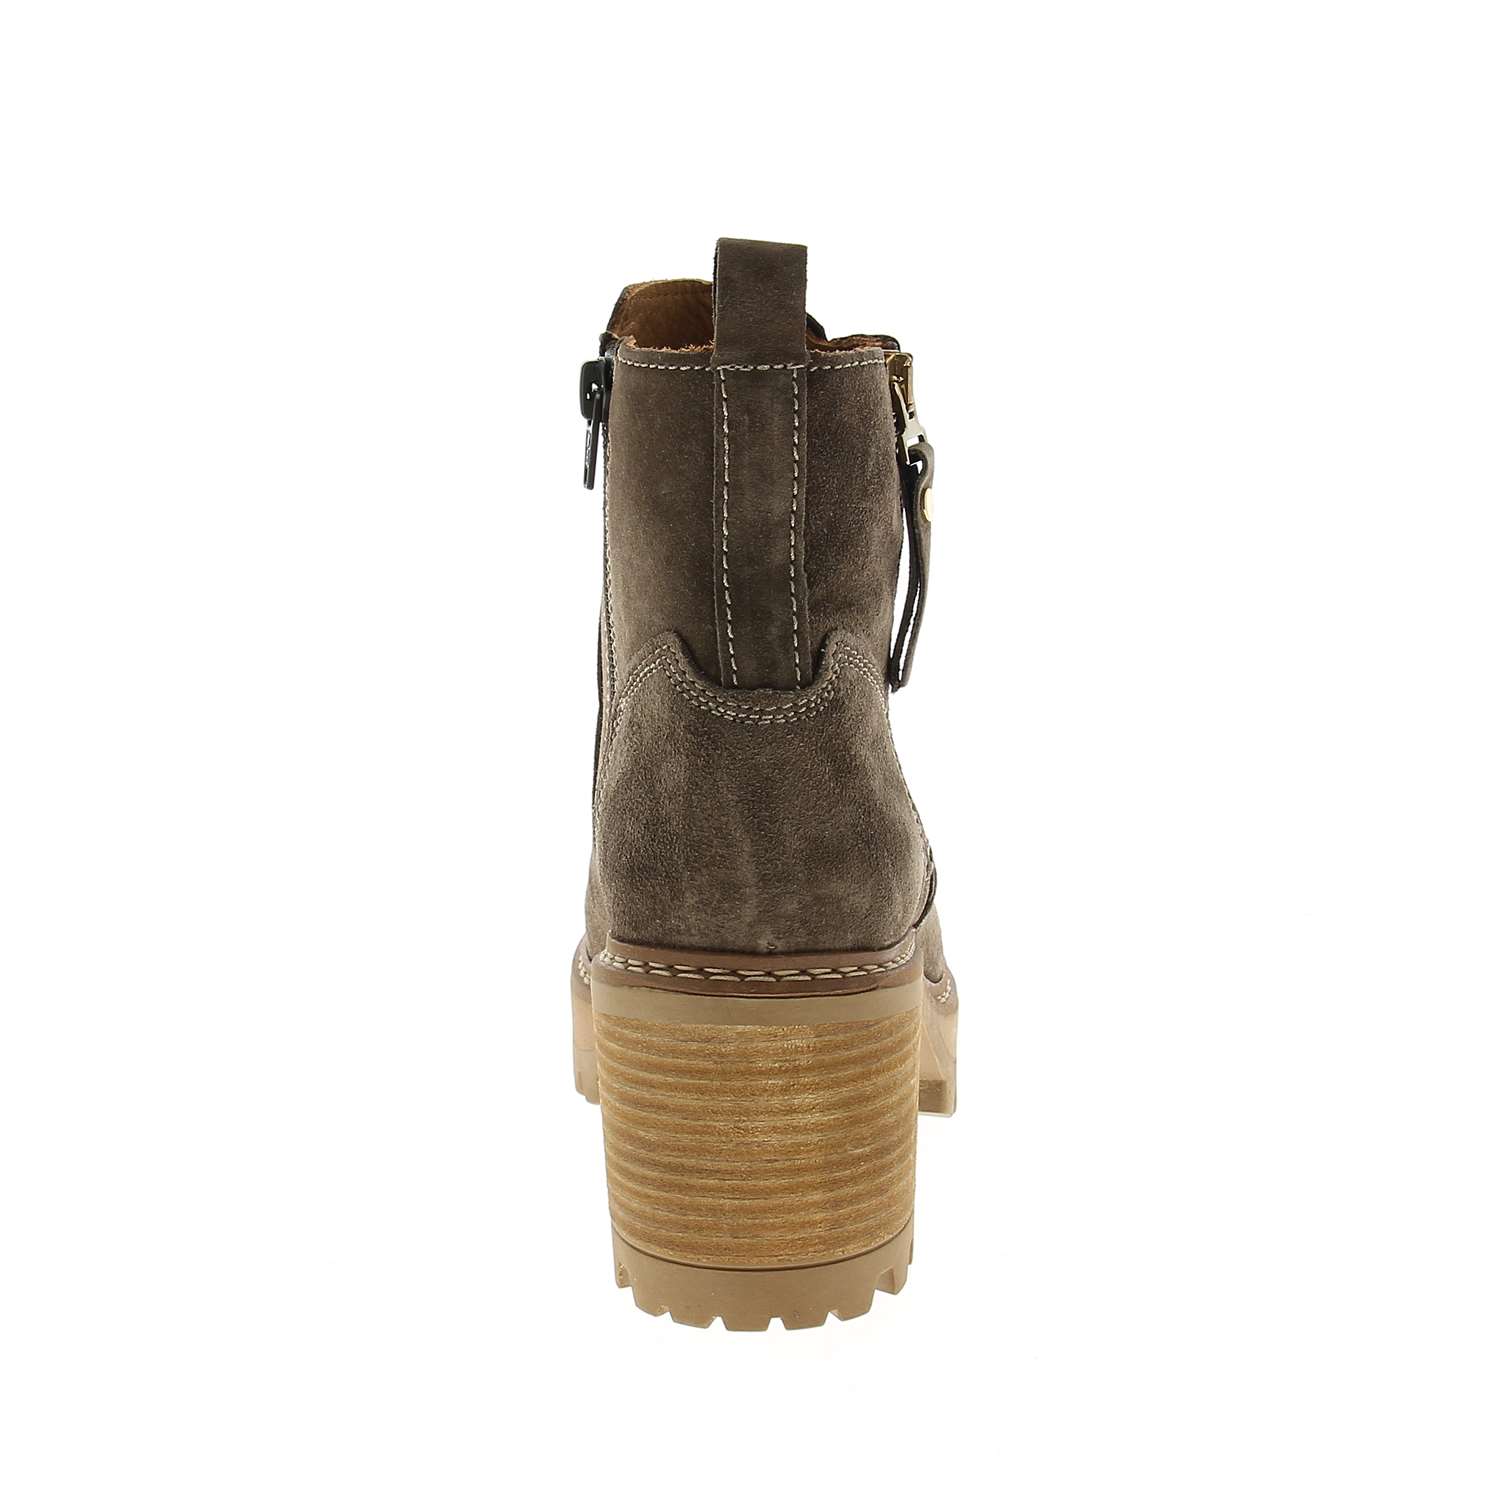 04 - AMARO - ALPE - Boots et bottines - Croûte de cuir